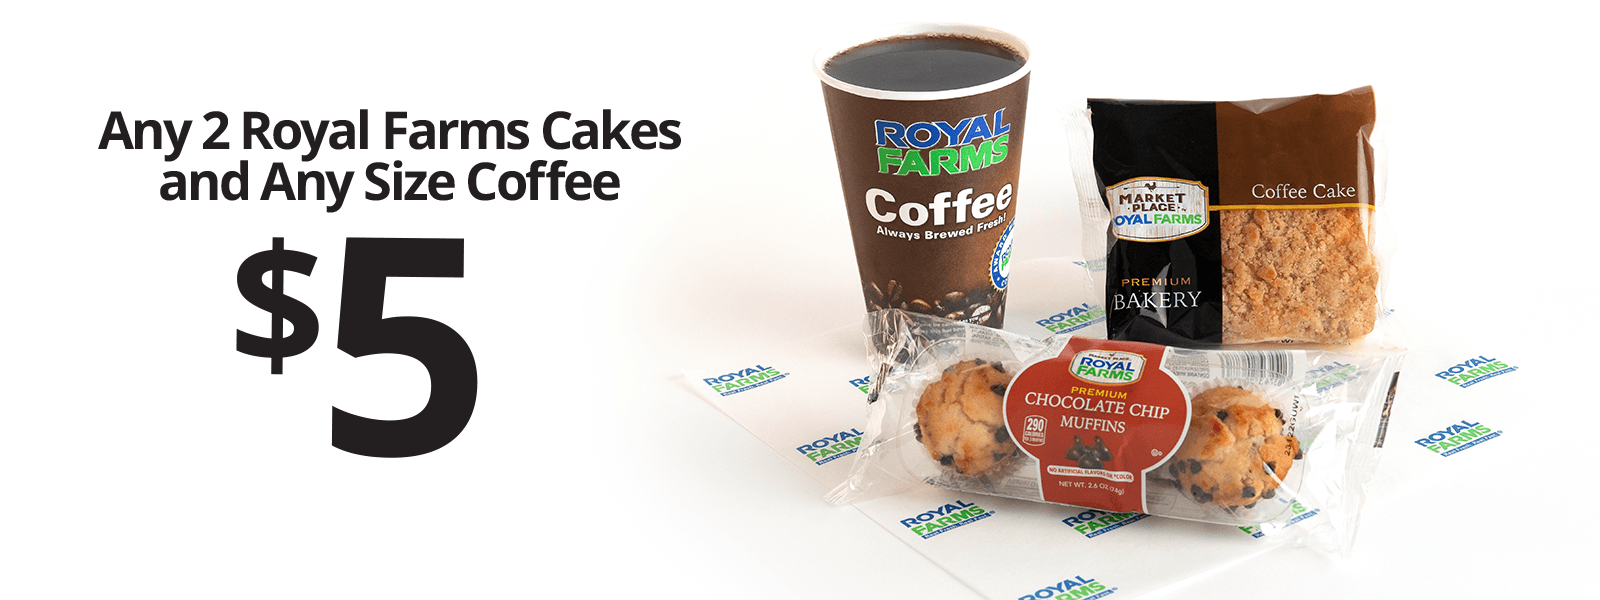 Royal Farms Promo – Cakes & Coffee